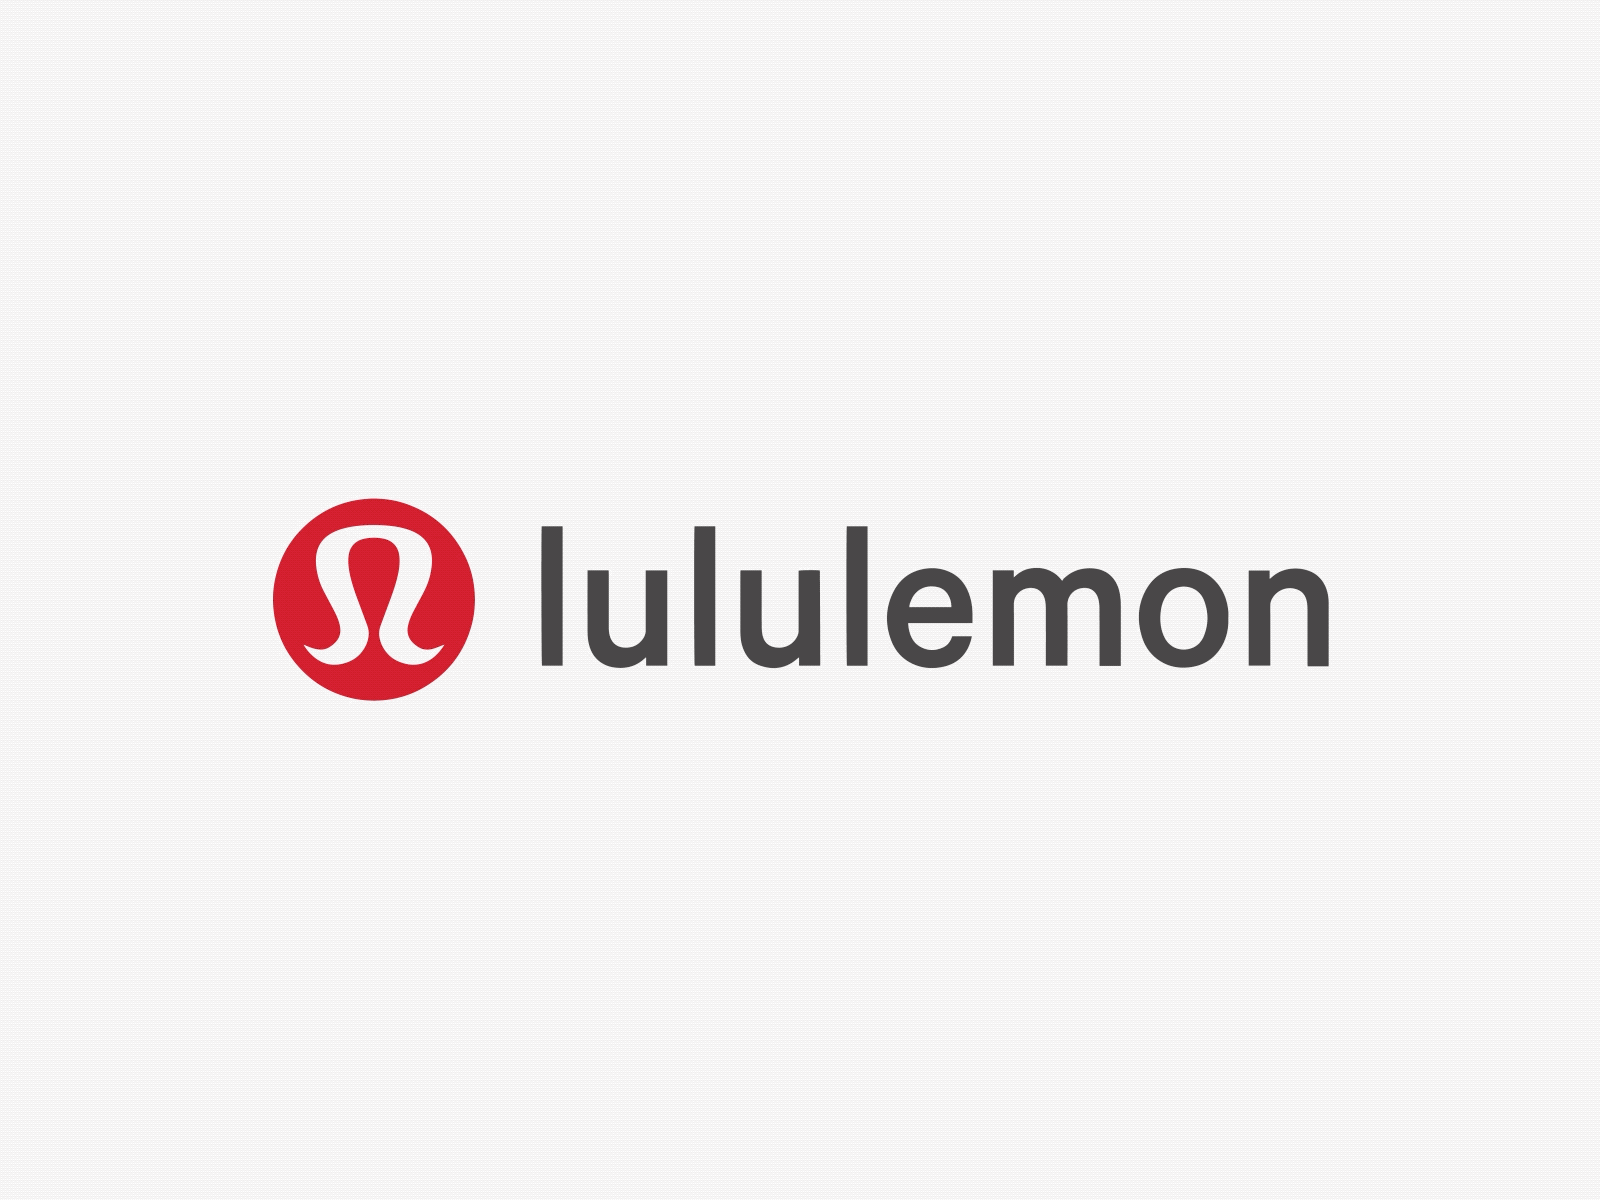 lululemon Logo Animation by Saloni Doshi on Dribbble